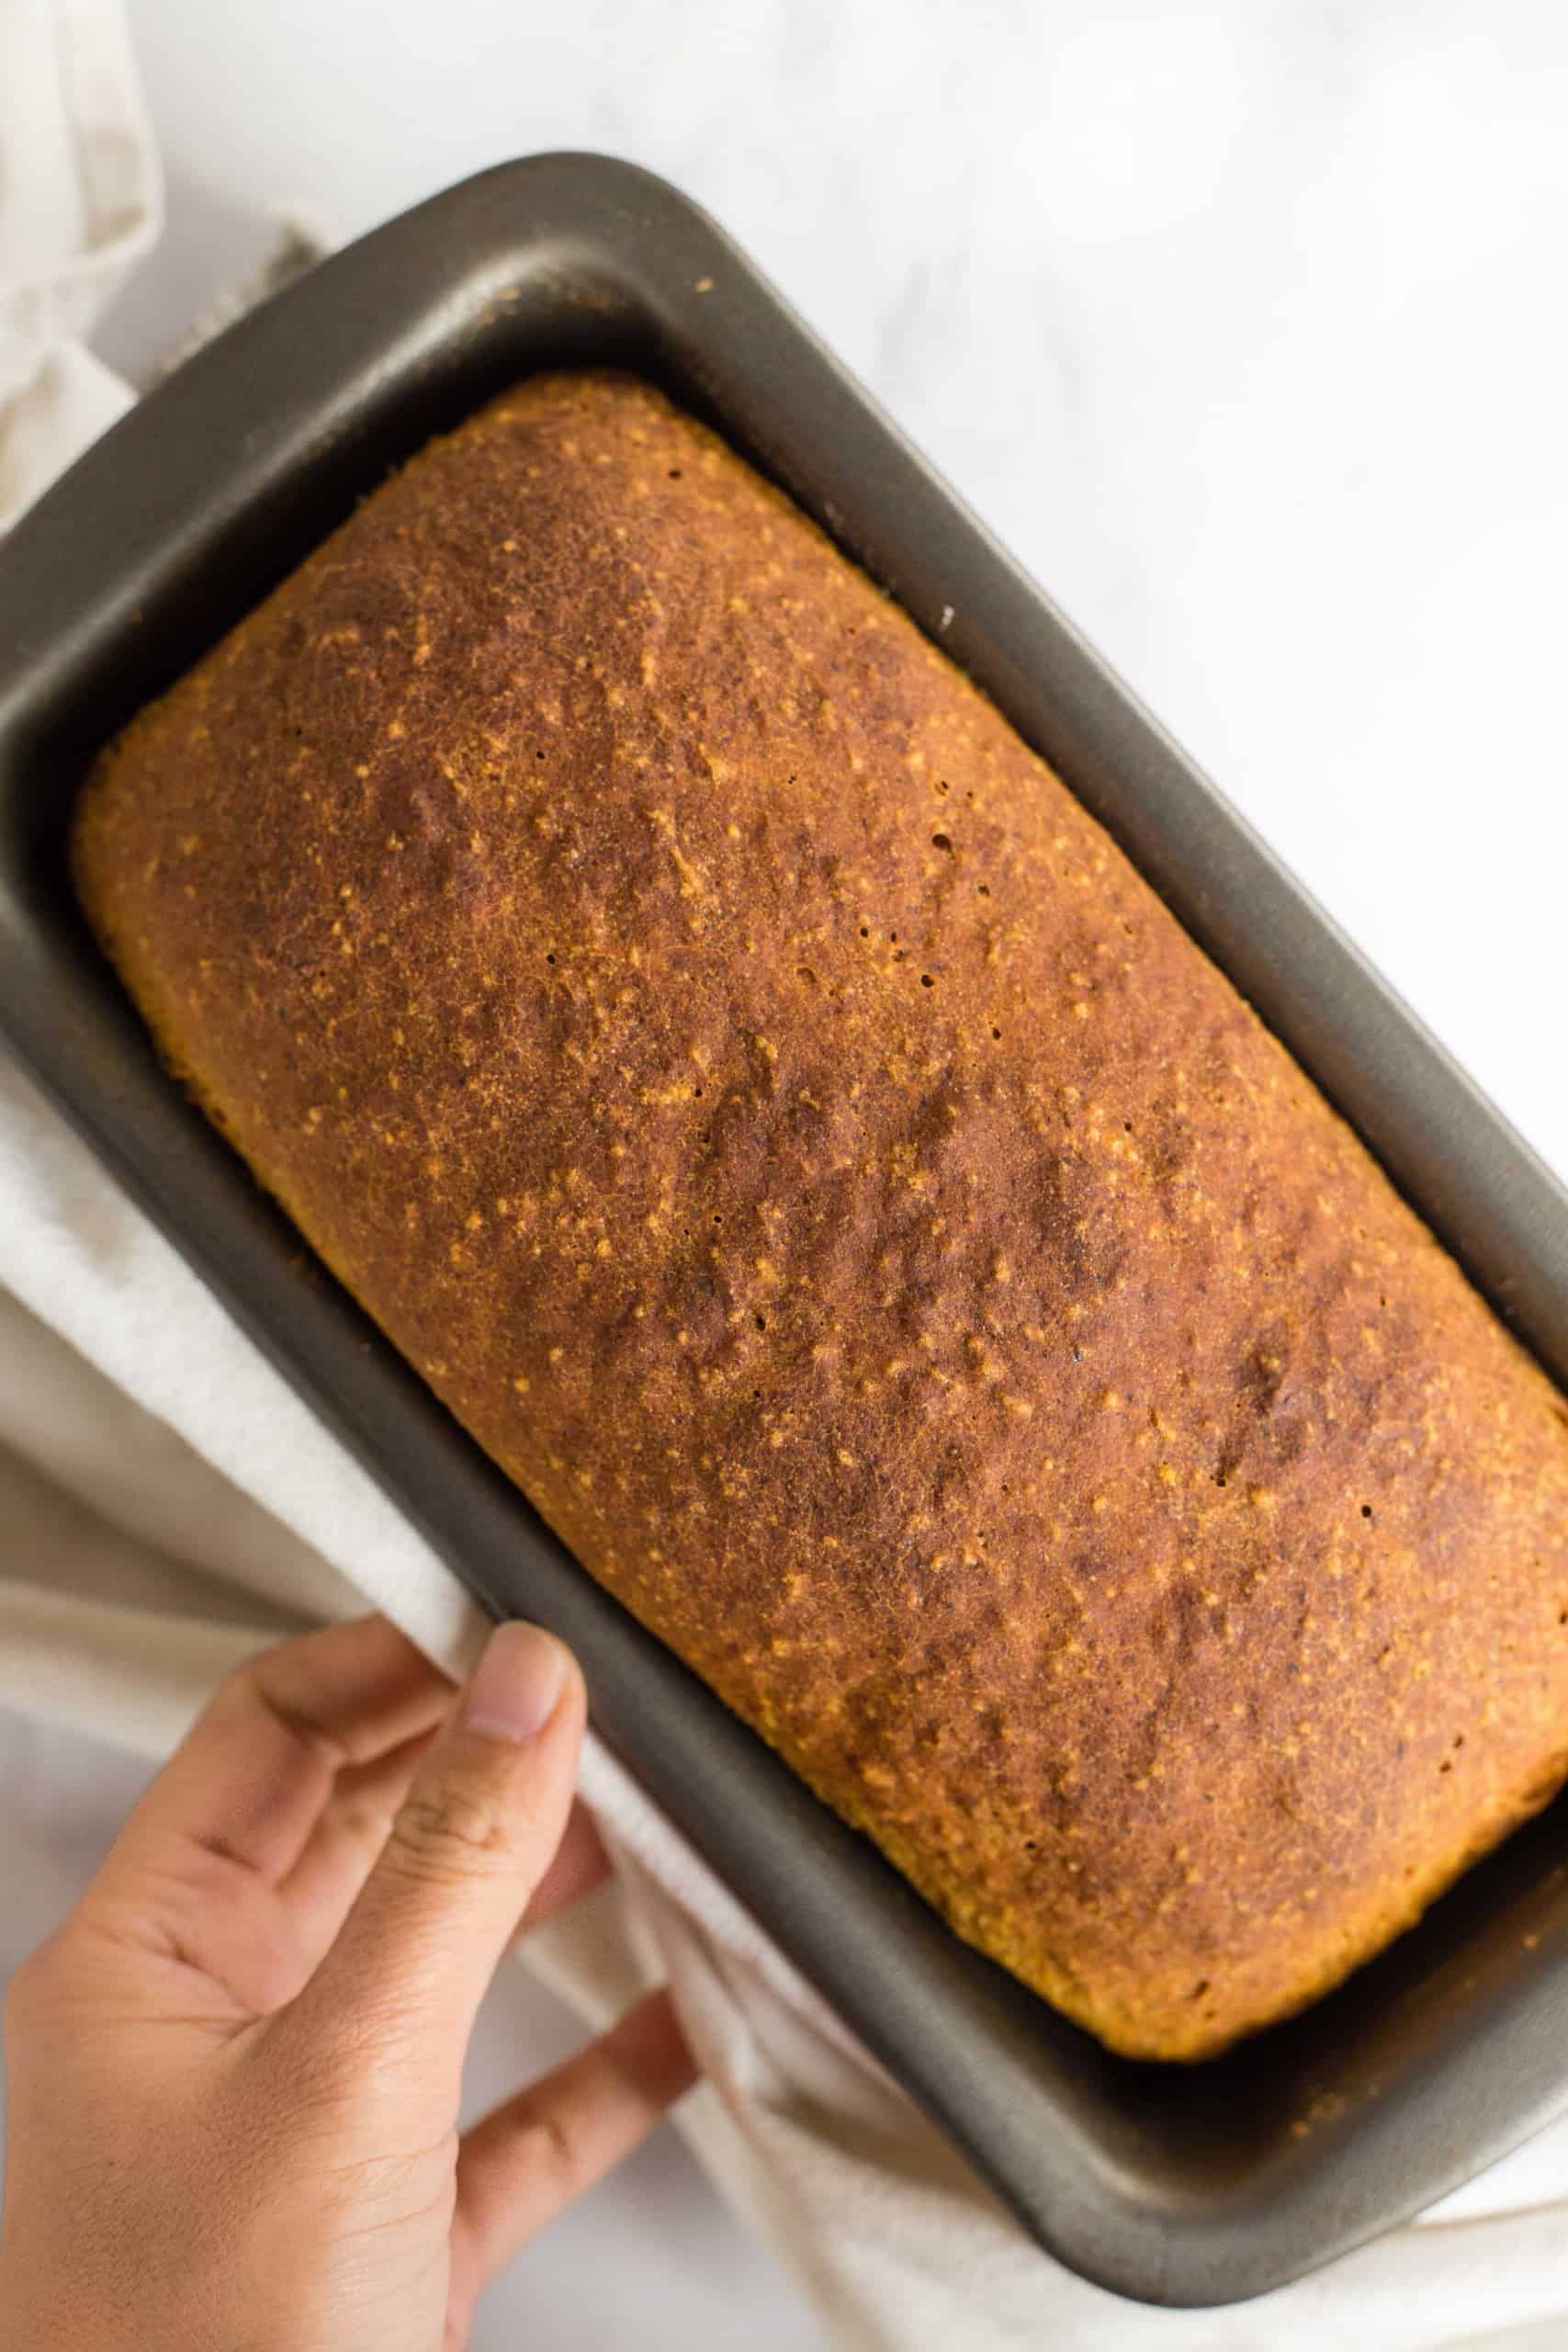 A freshly baked loaf of pumpkin yeast bread in metal pan.